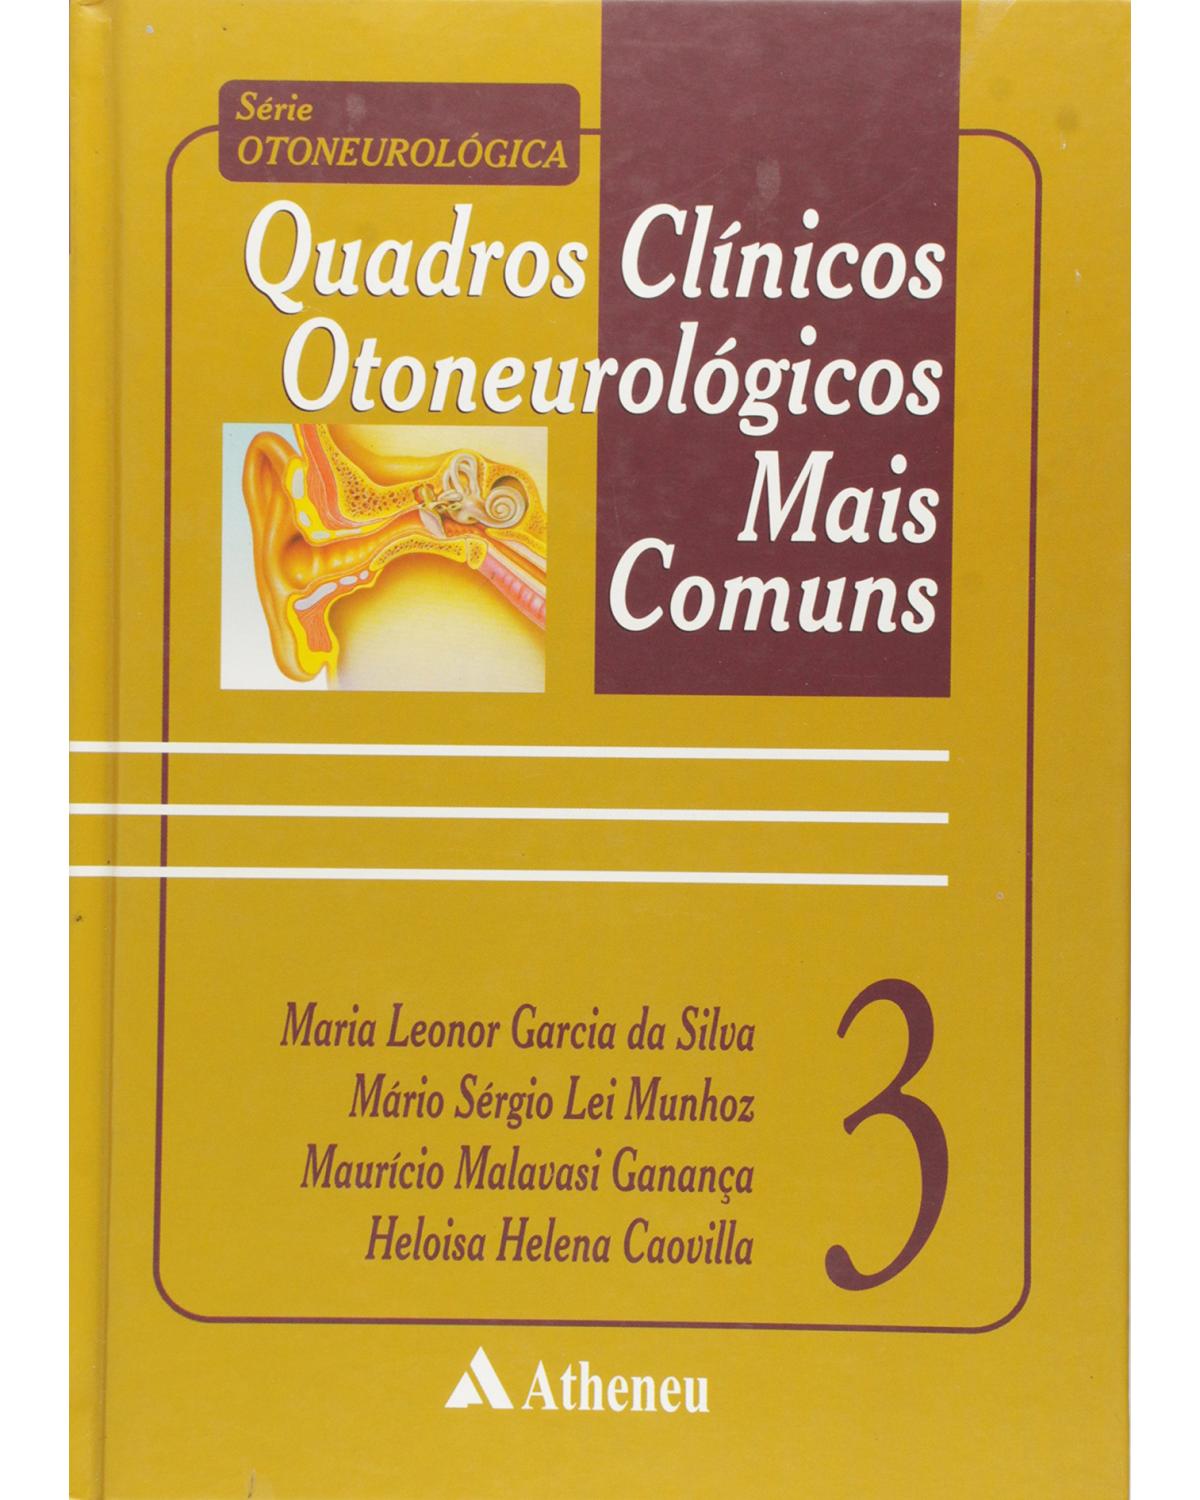 Quadros clínicos otoneurológicos mais comuns - Volume 3:  - 1ª Edição | 2001